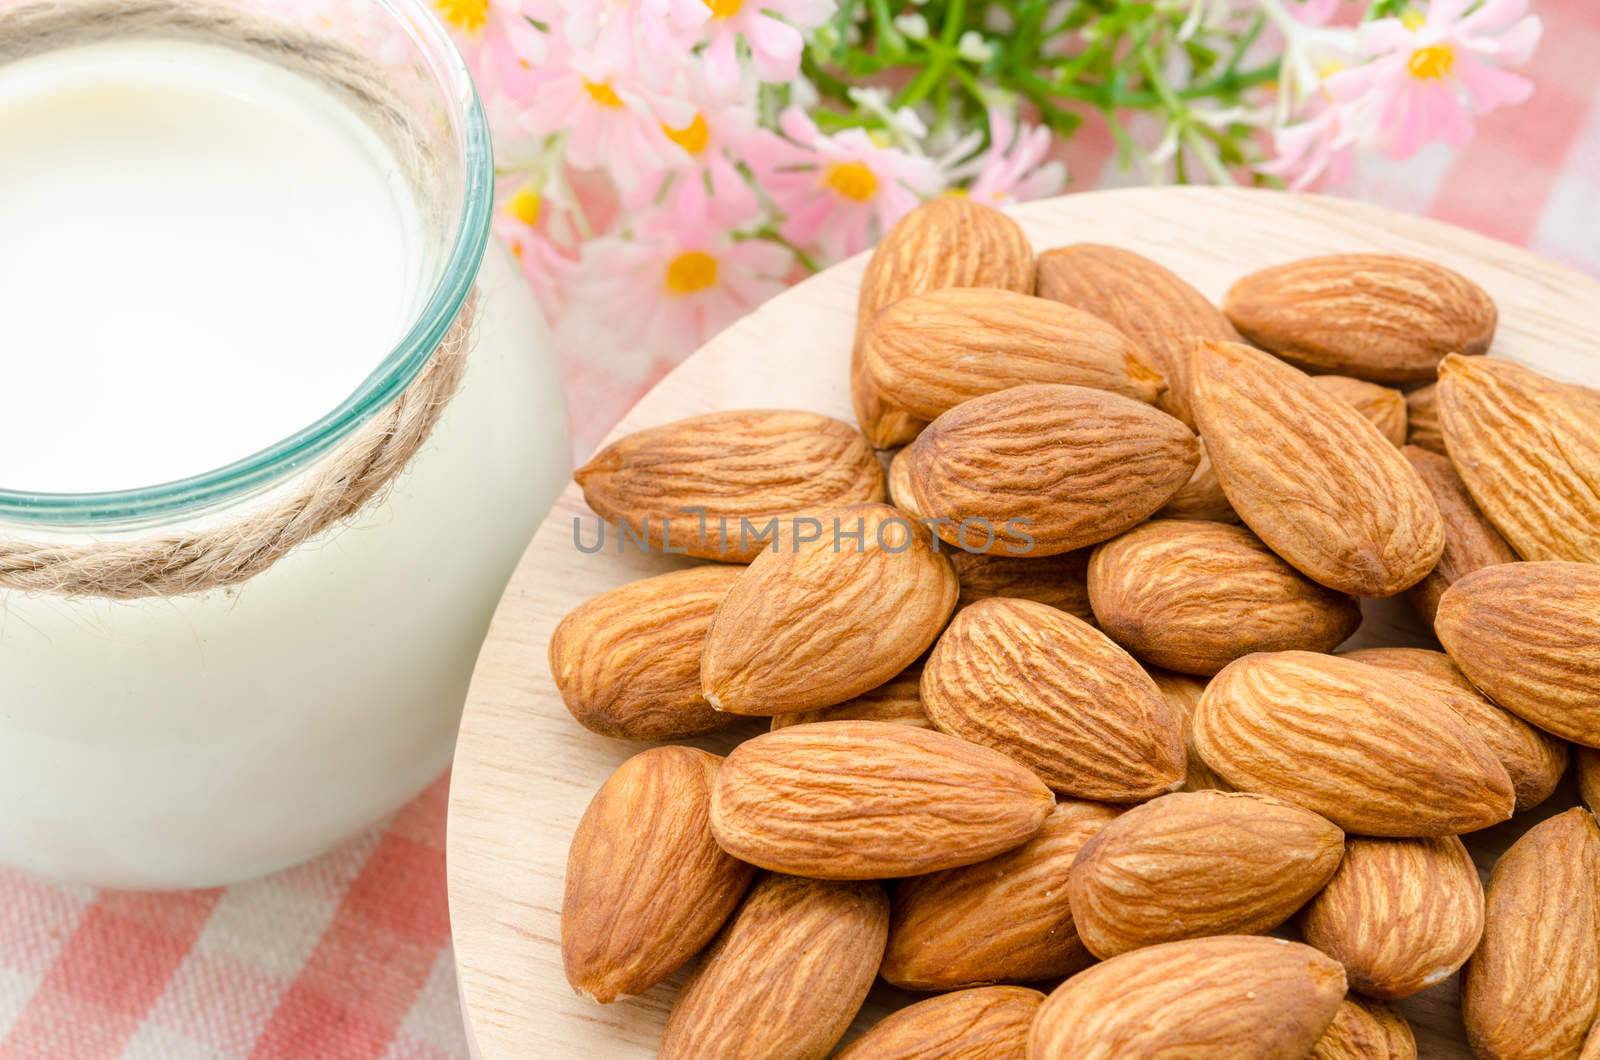 Almond with milk almond. by Gamjai